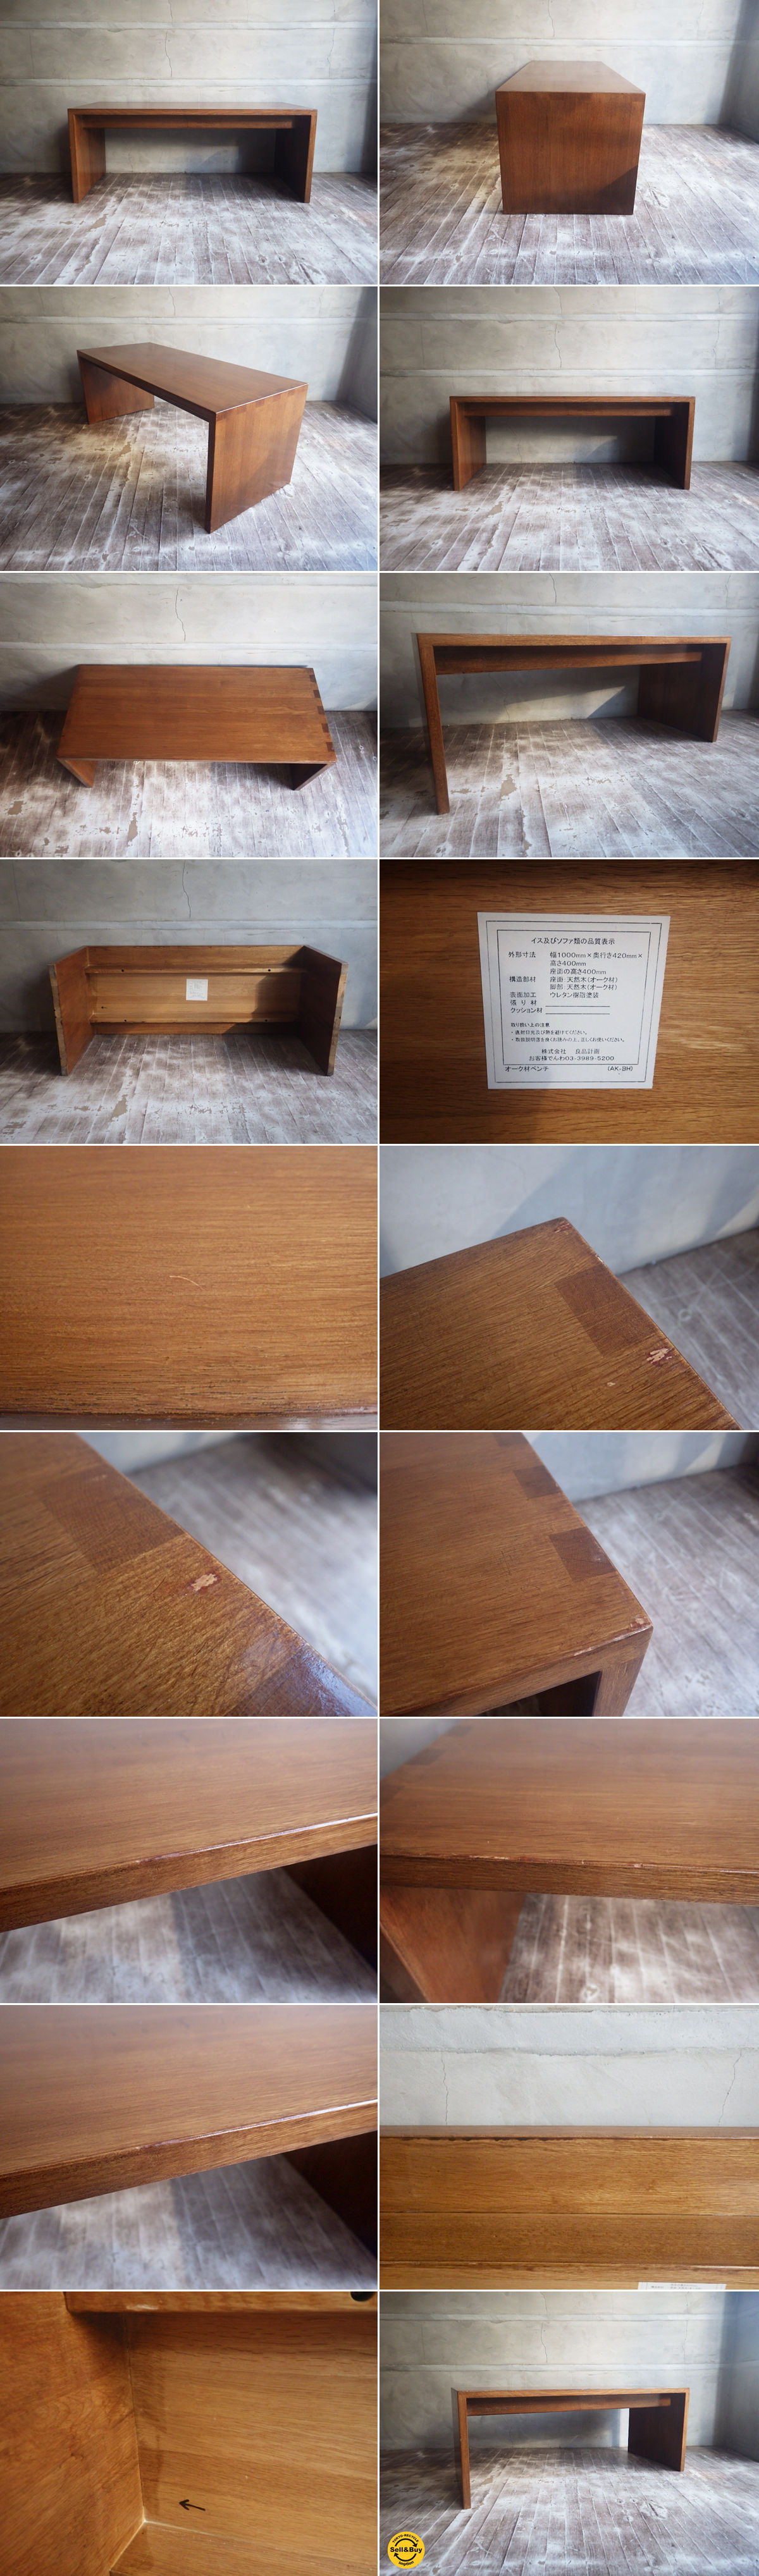 無印良品 MUJI オーク 無垢材 組木 ベンチ ローテーブル 廃盤